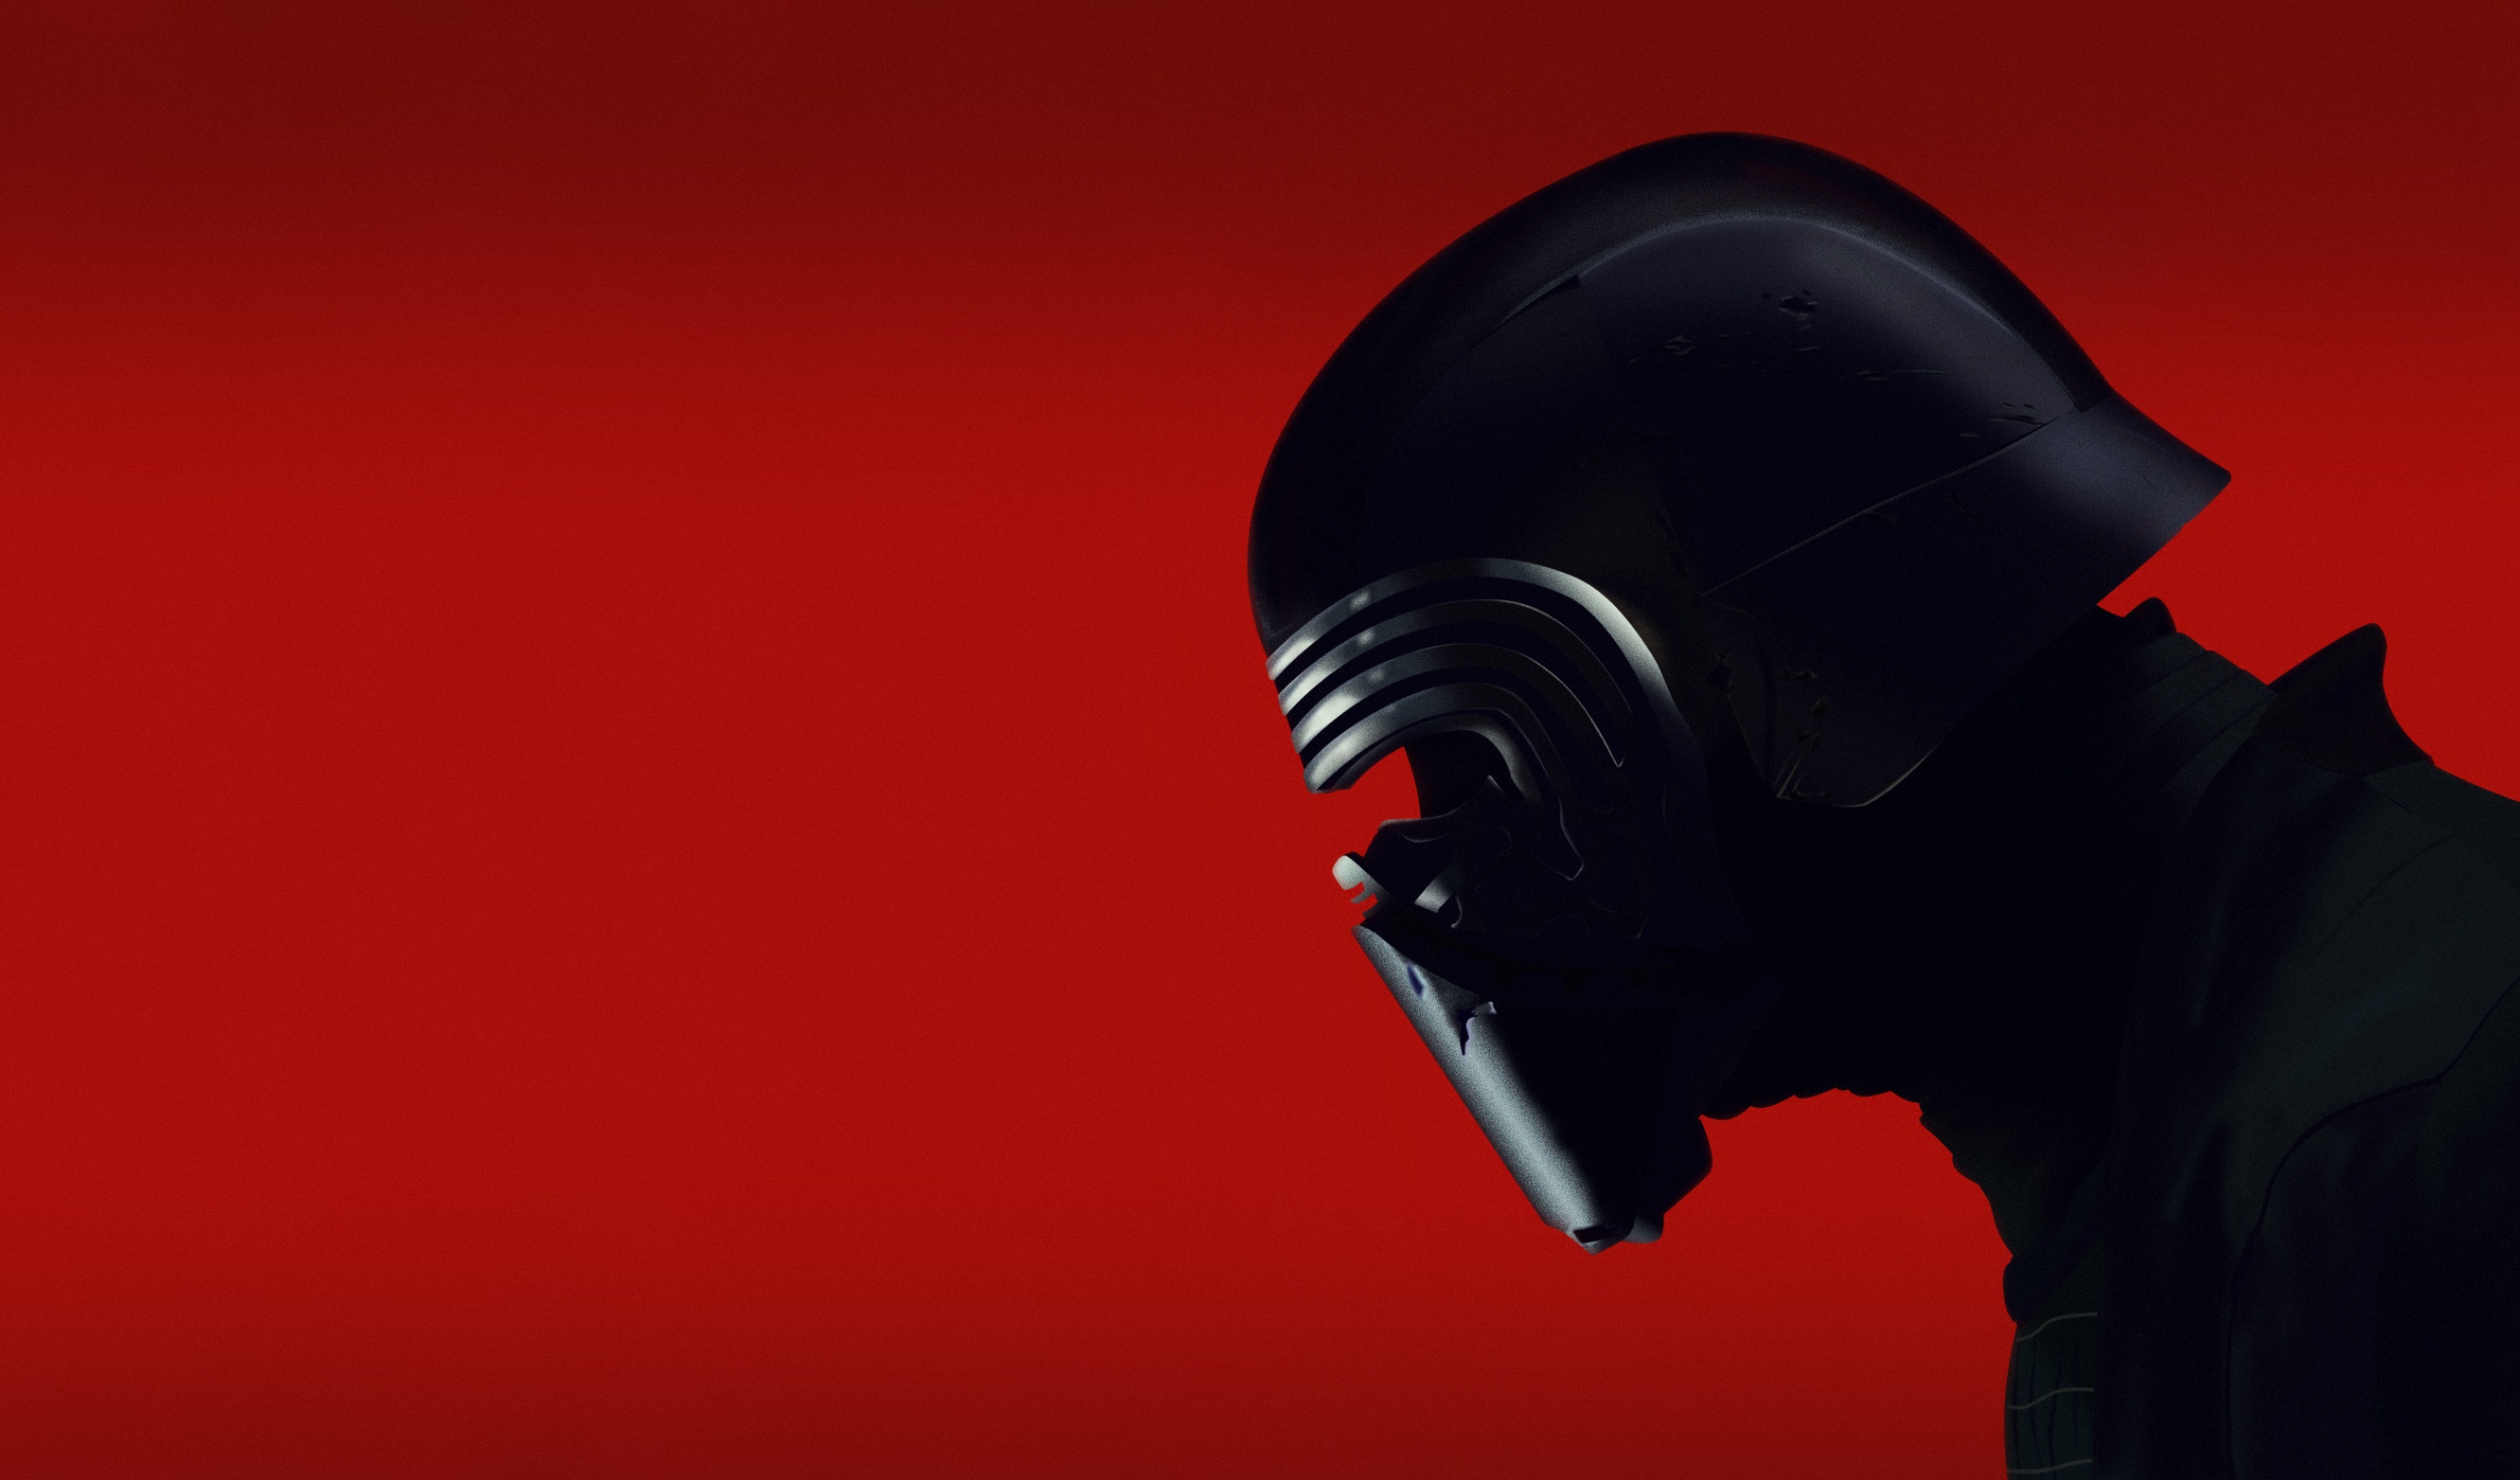 Star Wars Kylo Ren Red Background Star Wars Villains Helmet 2662x1563